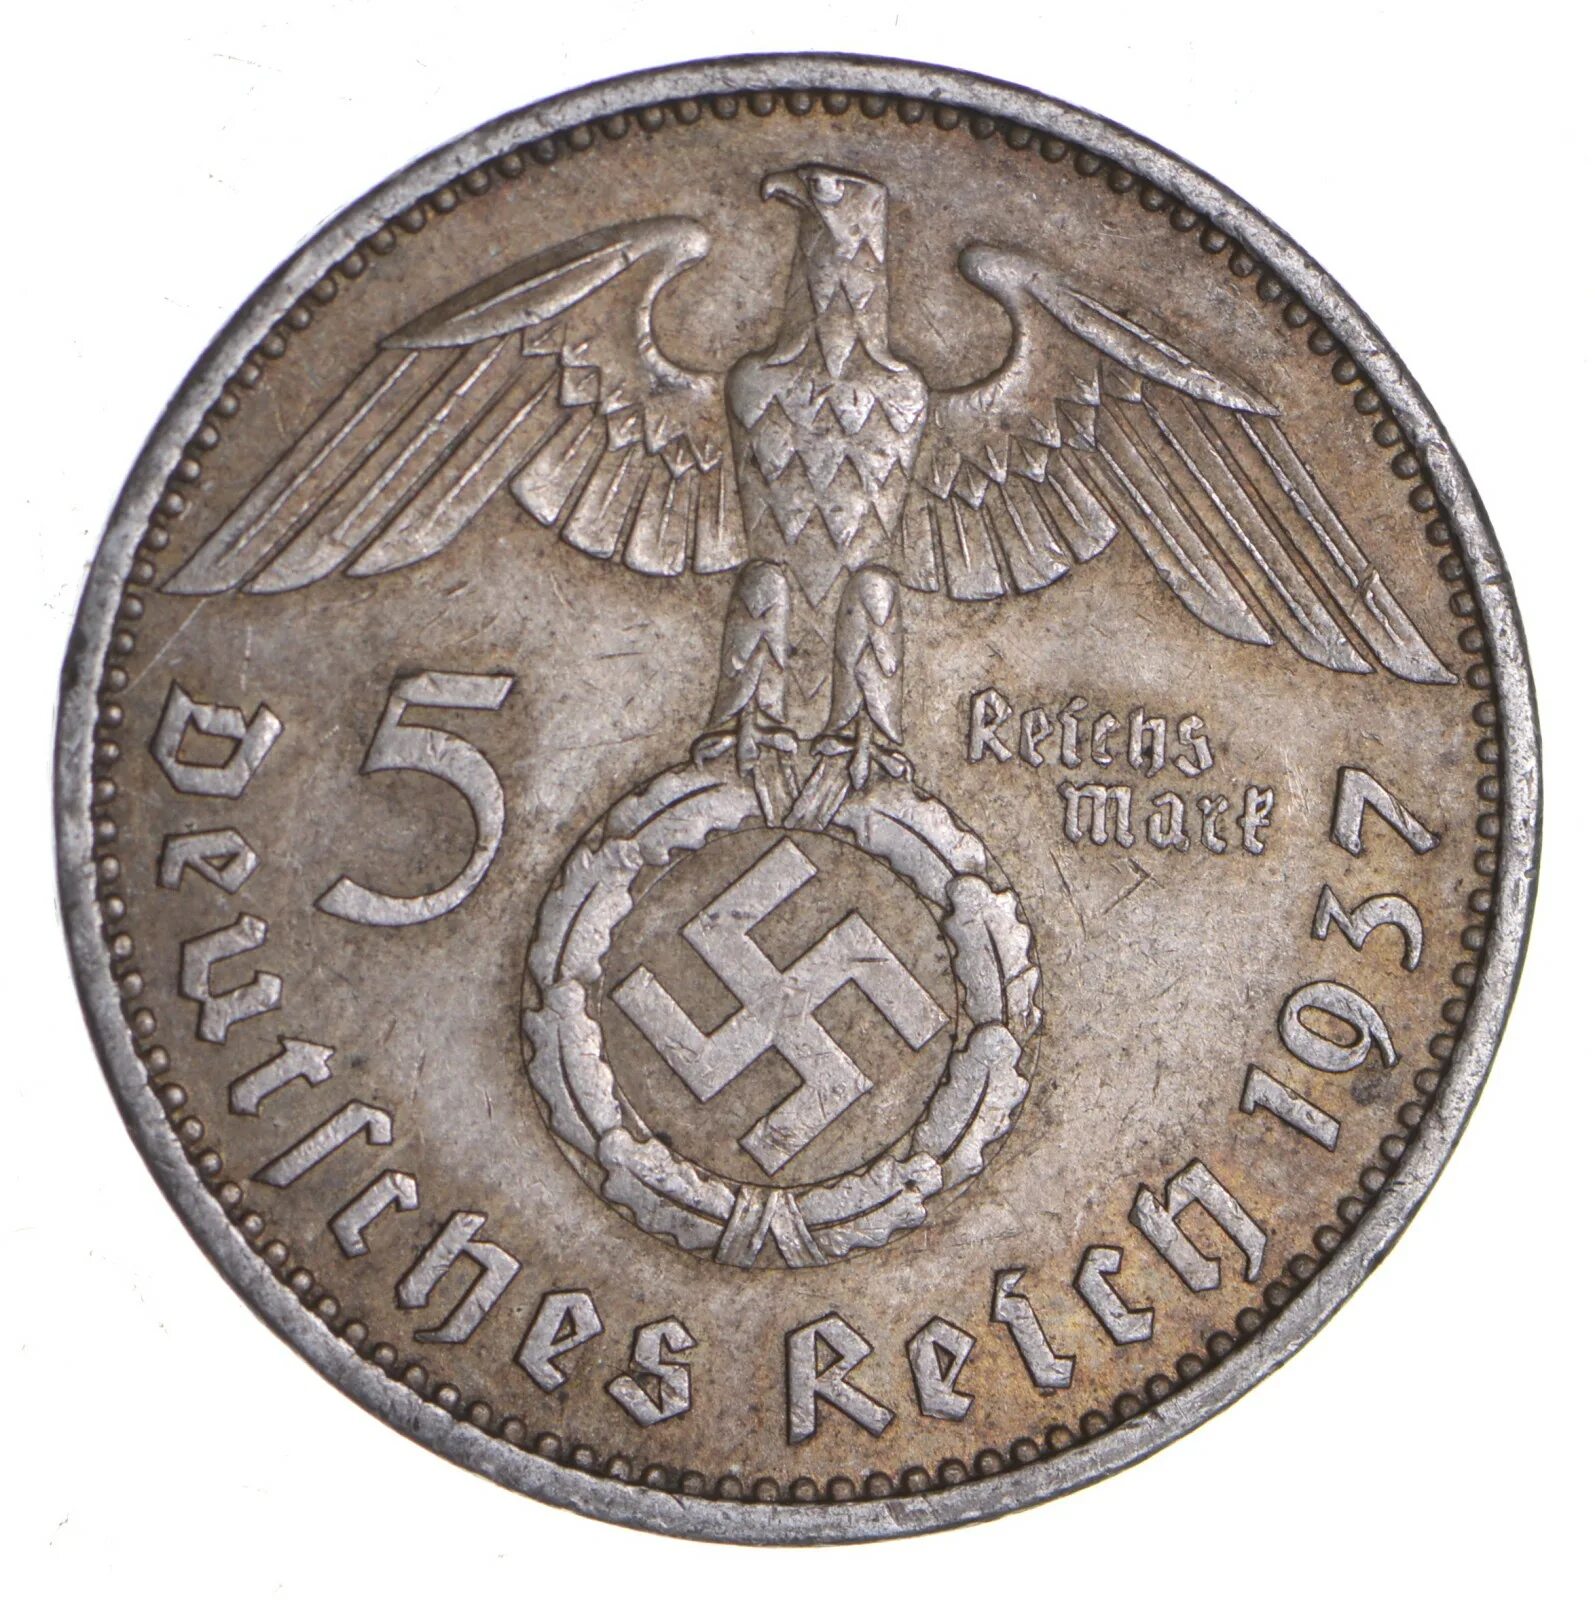 Немецкие 5 в рубли. Монета немецкая 5 deutktnes Relin 1937. Монетка 1939 Германия. Немецкие монеты второй мировой войны. Монета 1937 немецкая со свастикой.